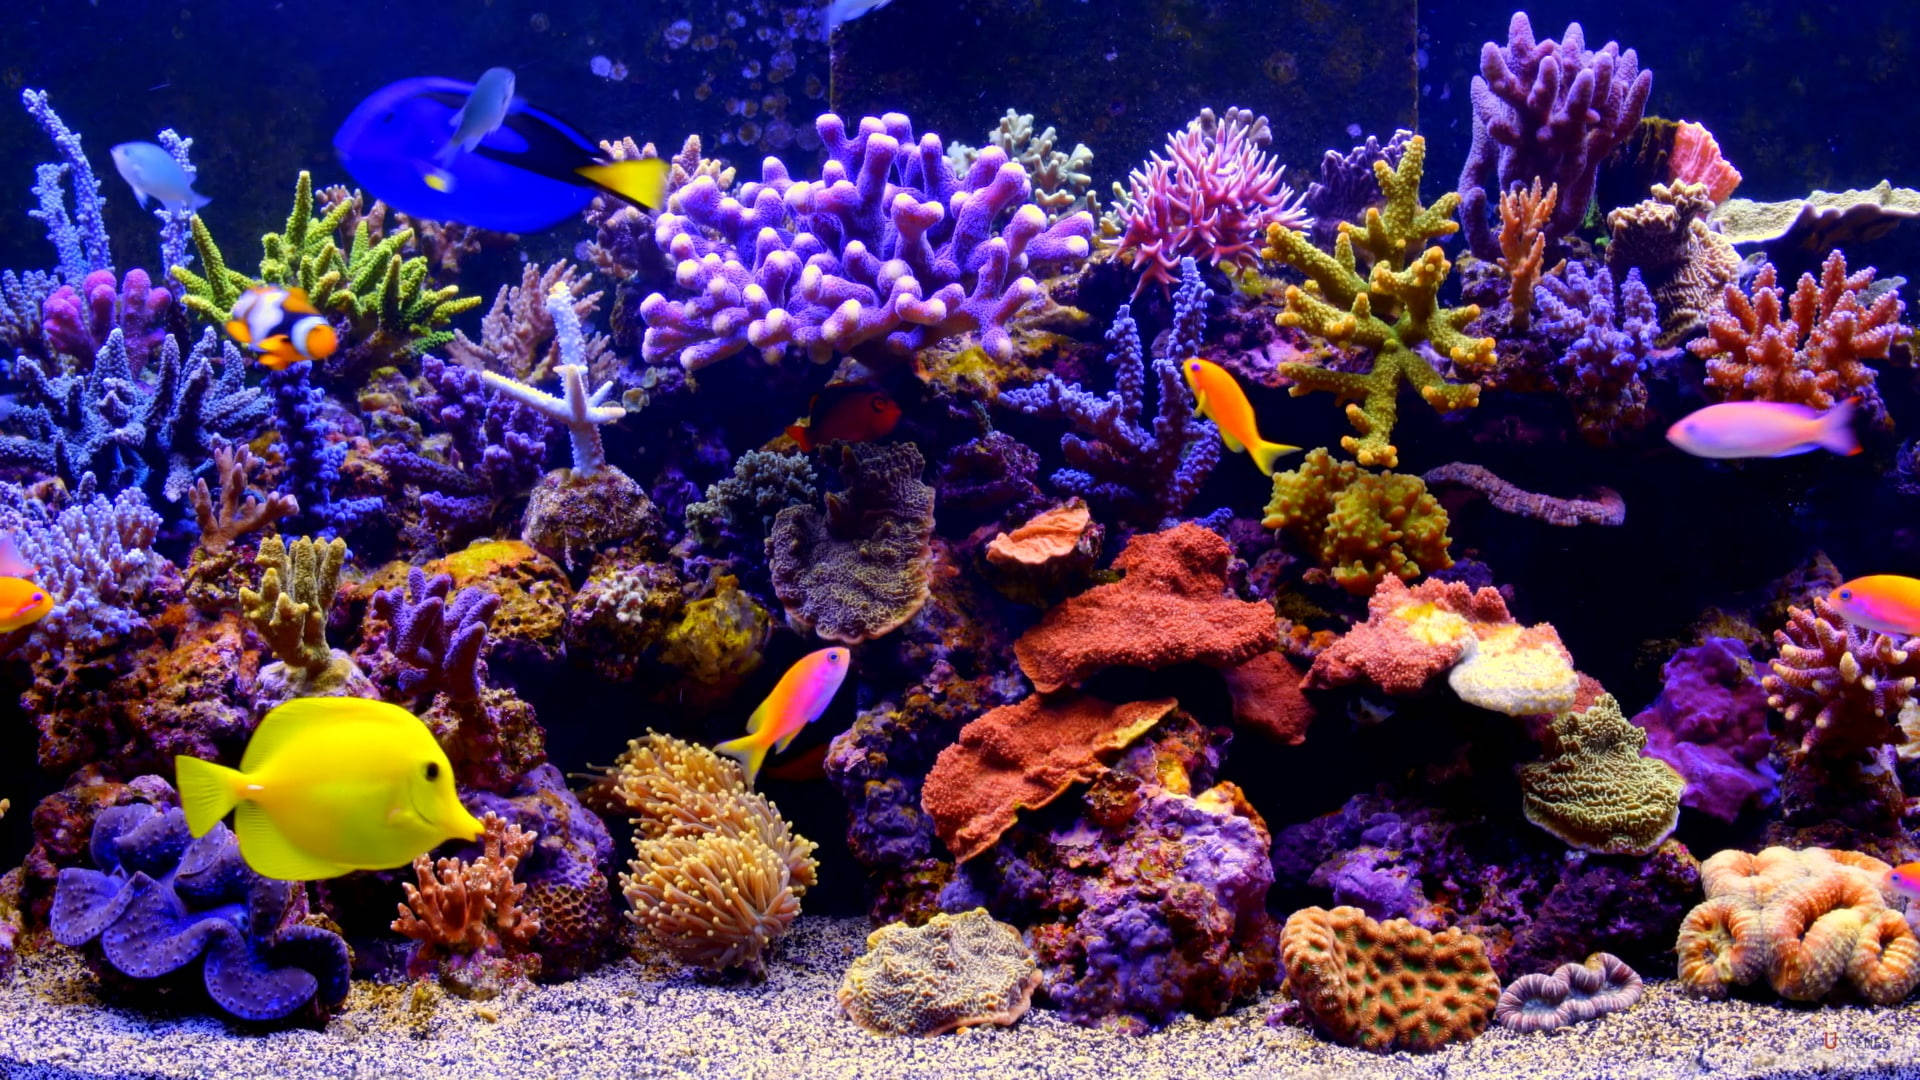 Recifede Coral Vibrante Em Um Aquário. Papel de Parede